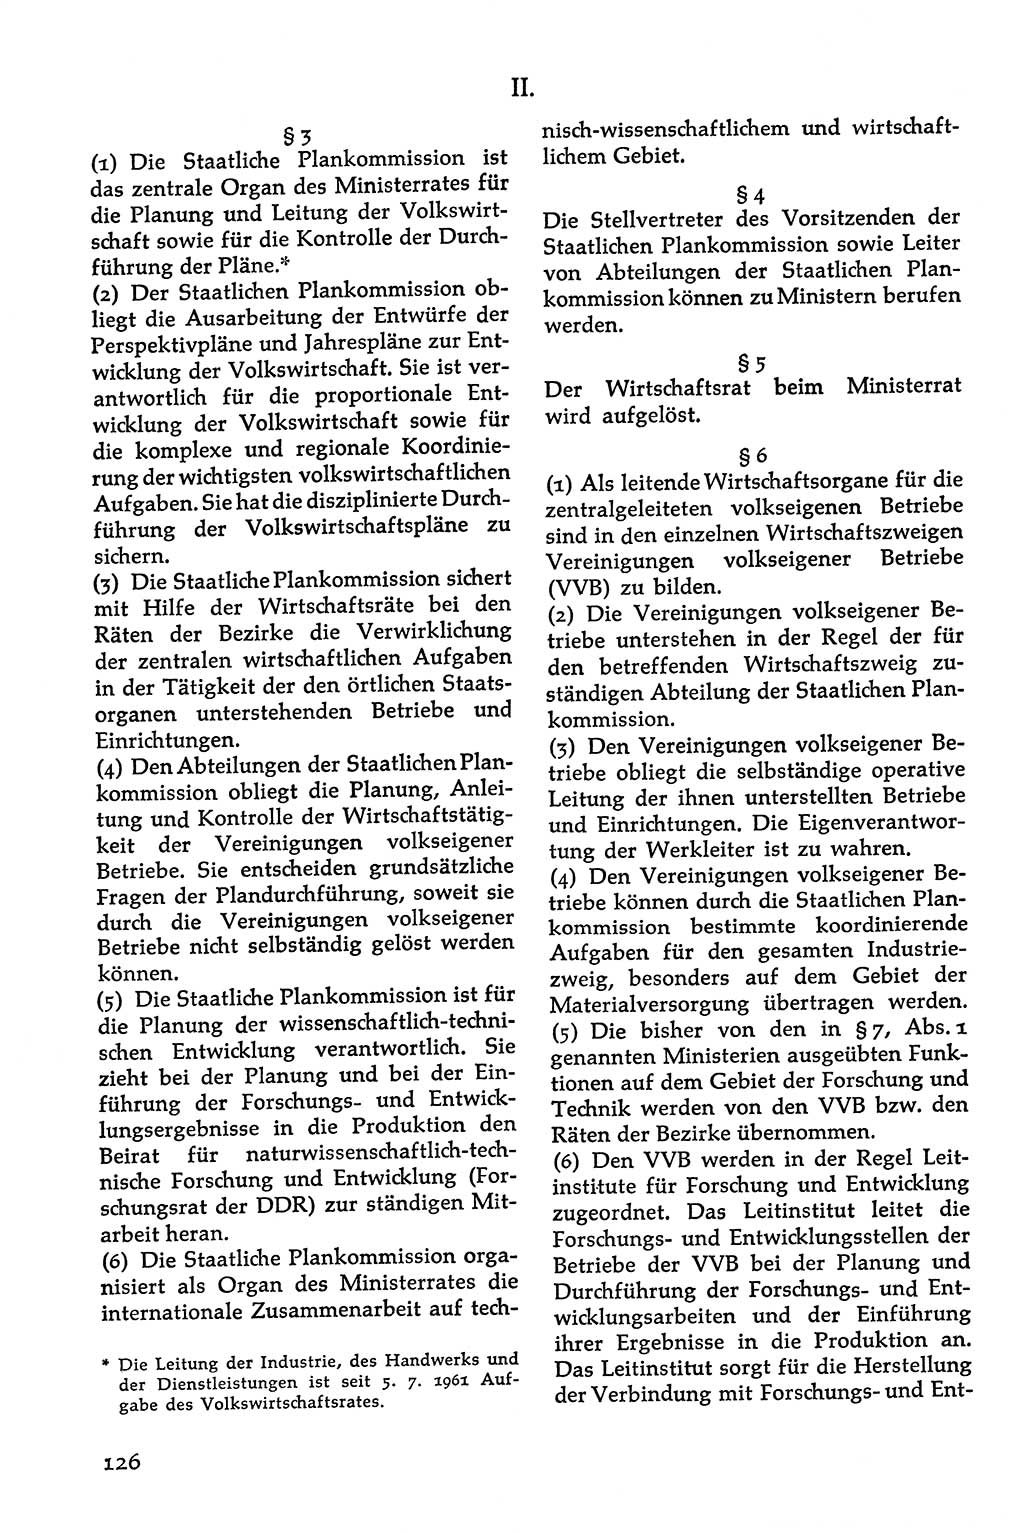 Volksdemokratische Ordnung in Mitteldeutschland [Deutsche Demokratische Republik (DDR)], Texte zur verfassungsrechtlichen Situation 1963, Seite 126 (Volksdem. Ordn. Md. DDR 1963, S. 126)